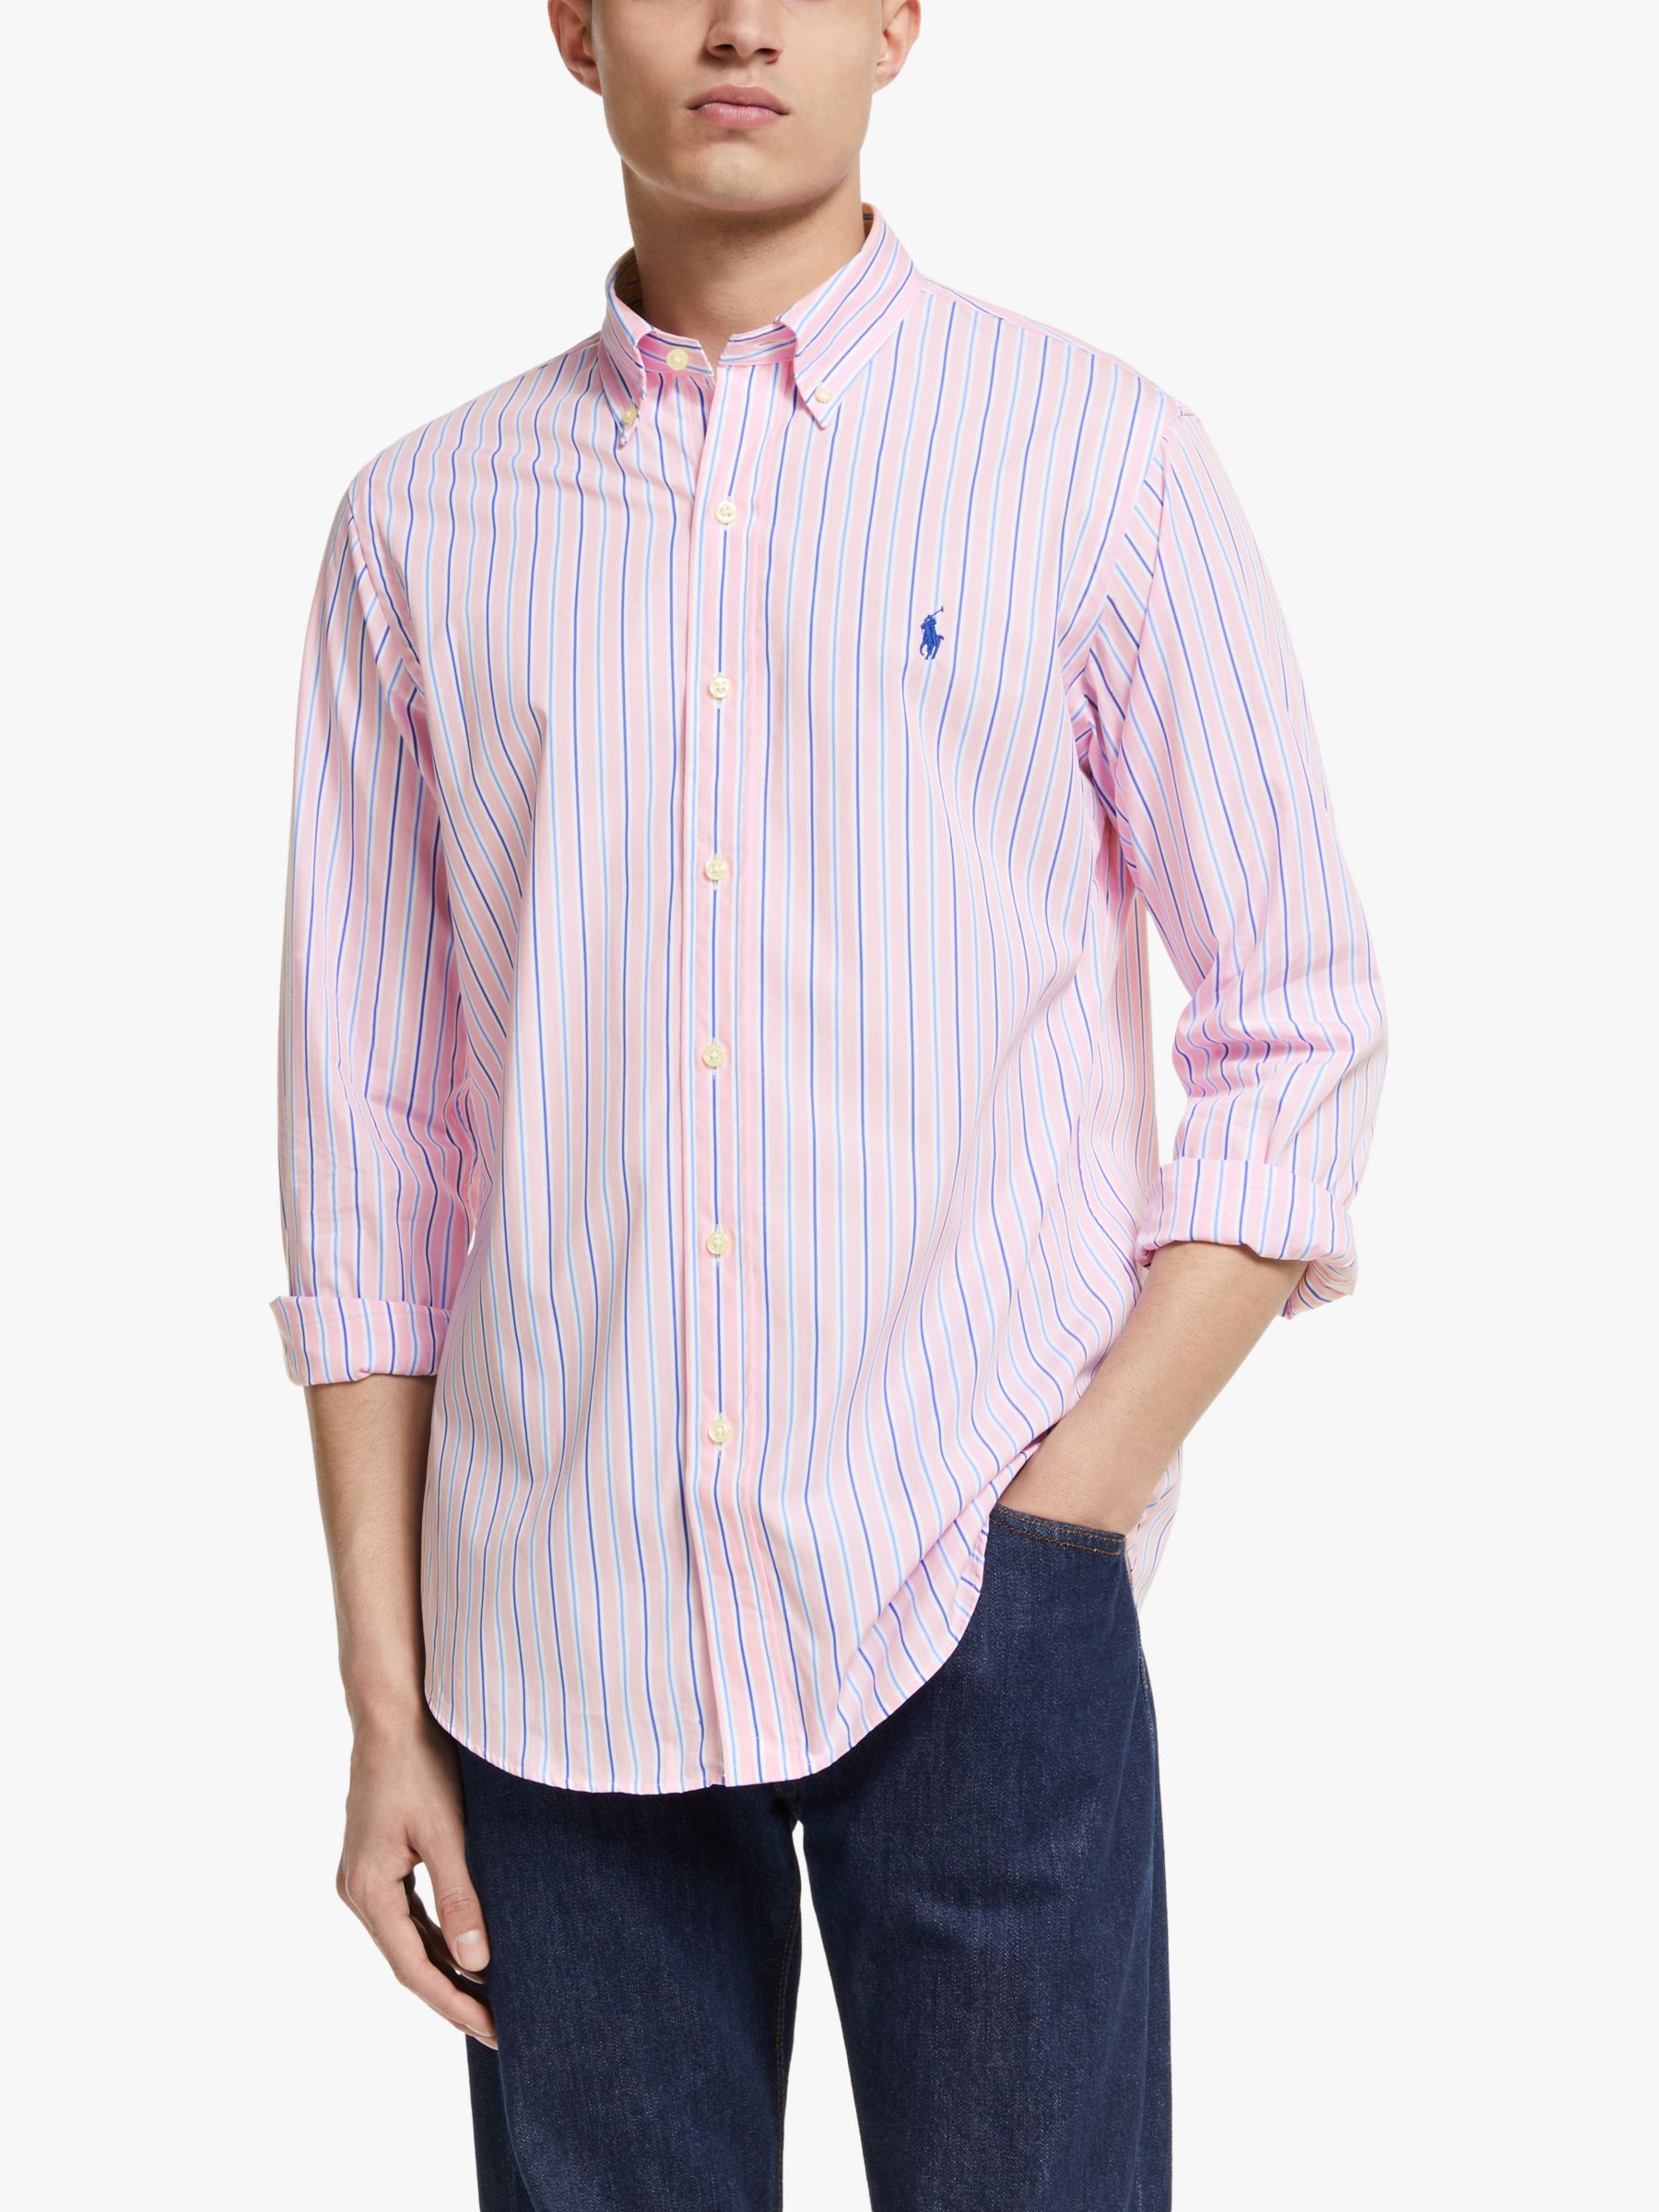 Total 60+ imagen pink and blue ralph lauren shirt